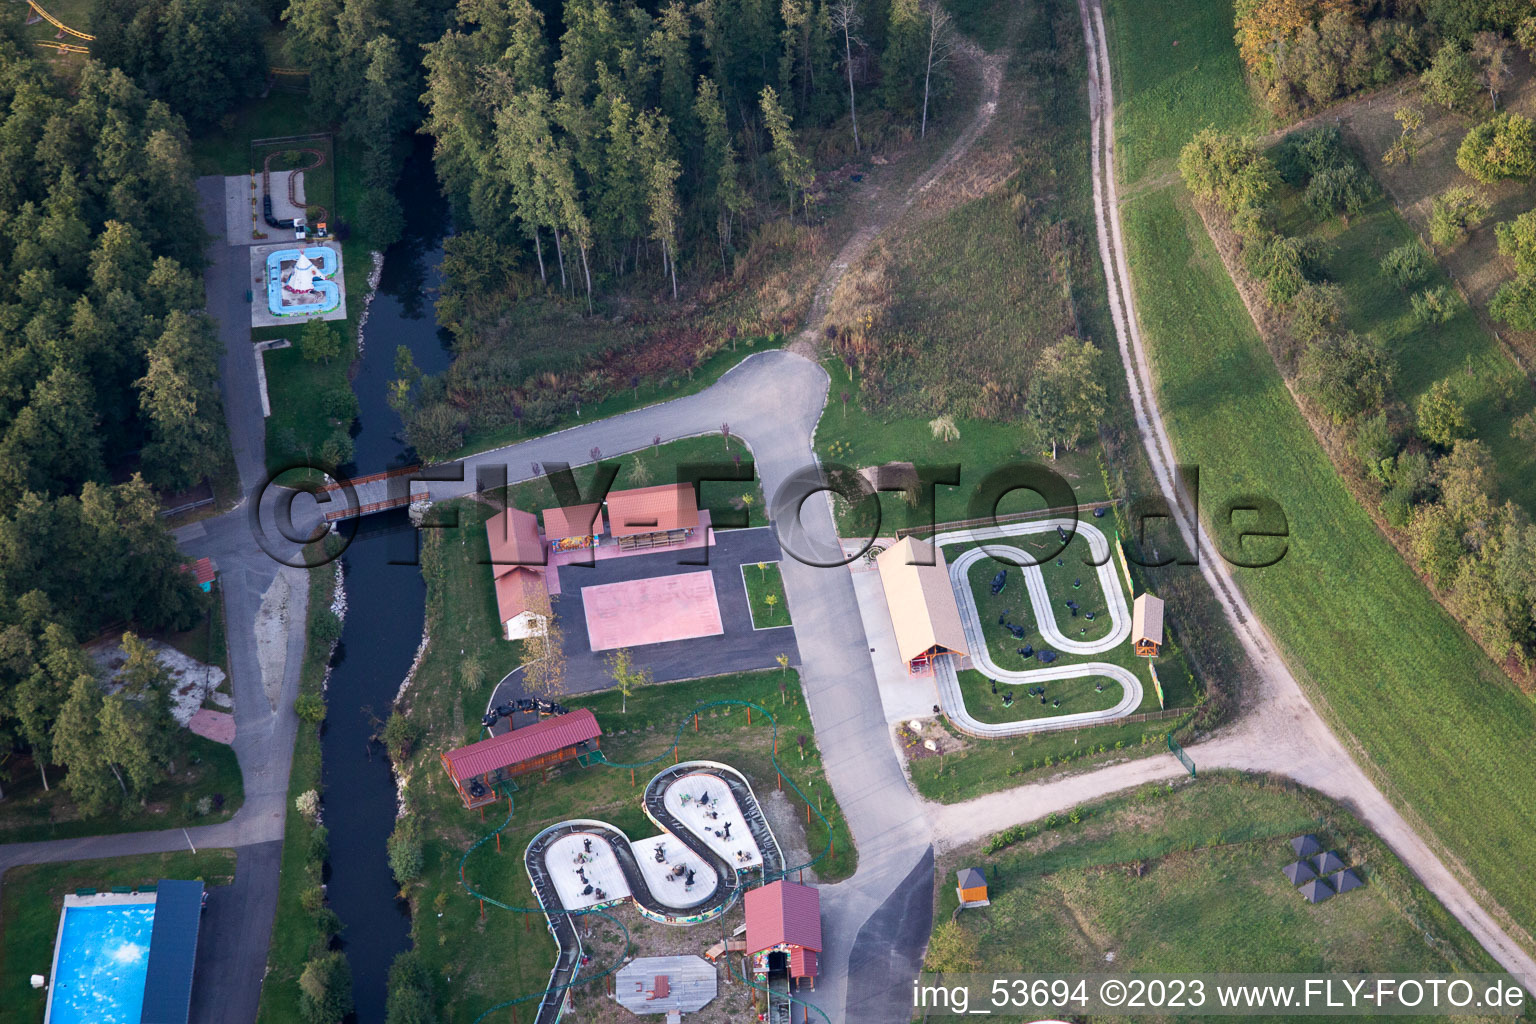 Gunstett im Bundesland Bas-Rhin, Frankreich von der Drohne aus gesehen